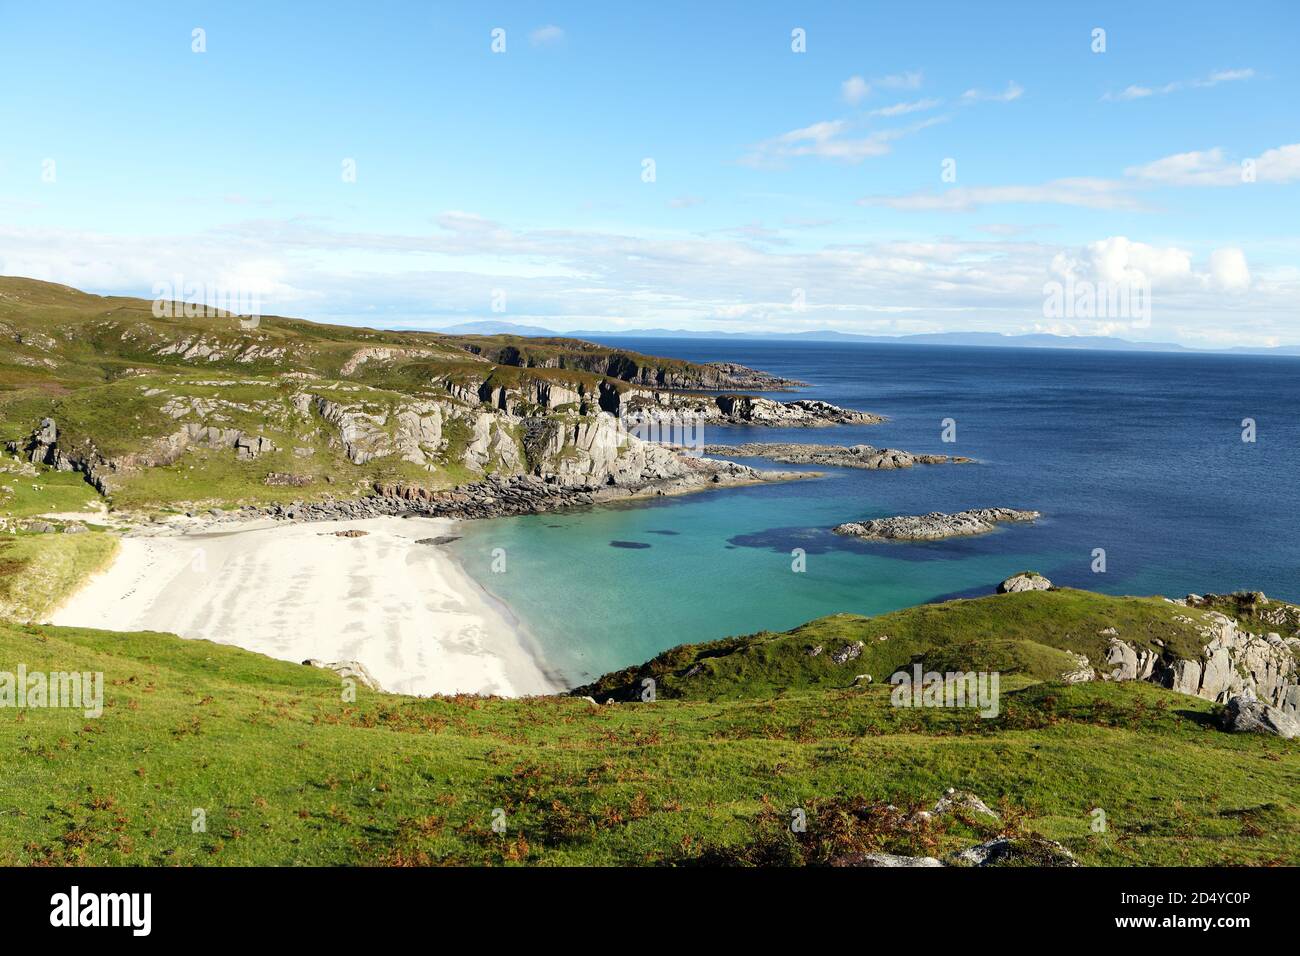 Belle plage de sable isolée sur l'île de Mull dans les Hébrides intérieures d'Écosse, Royaume-Uni Banque D'Images